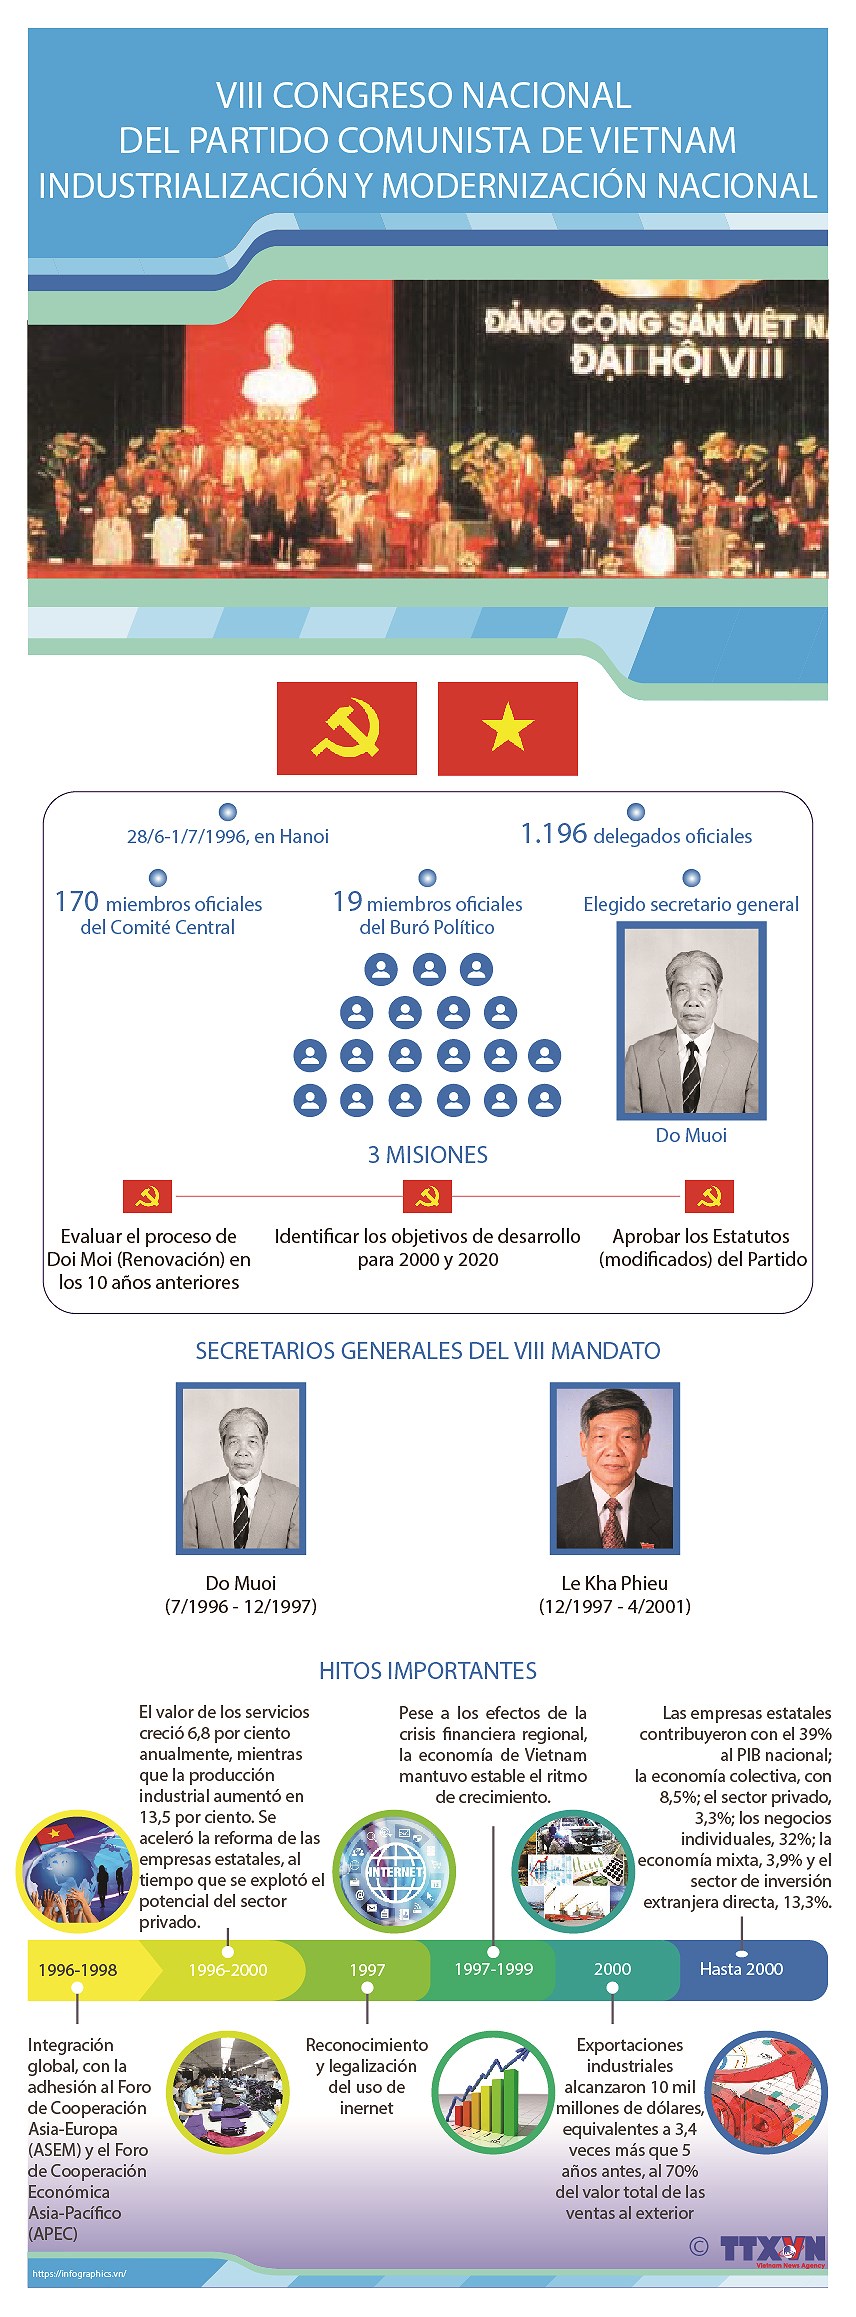 VIII Congreso Nacional del Partido Comunista: Industrializacion y modernizacion del pais hinh anh 1